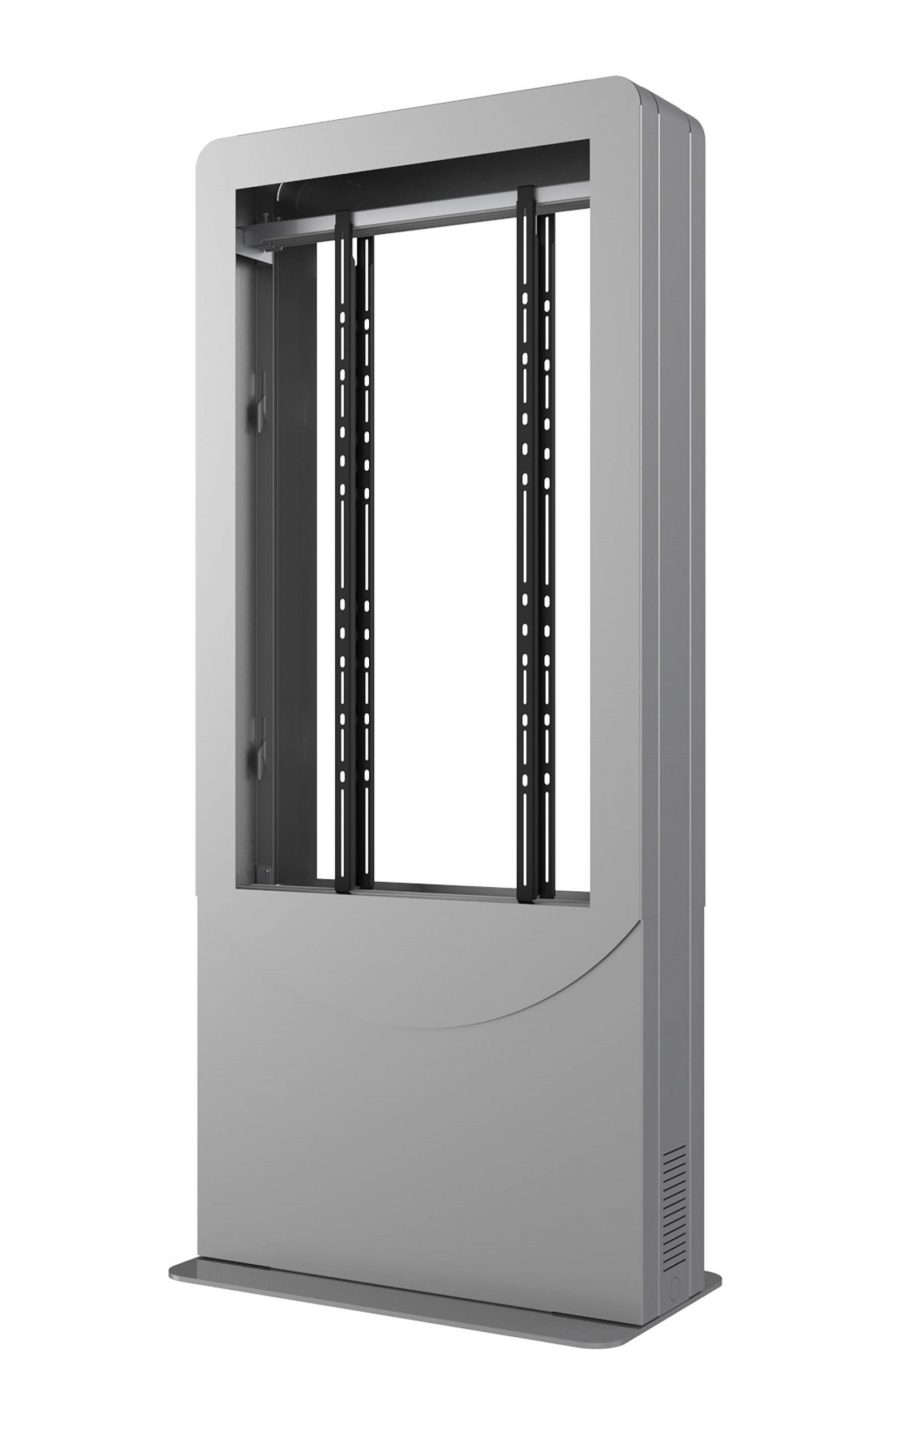 Peerless-AV KIPC2543B-S-3 Floorstanding Portrait Back-to-Back Kiosk for 43″ Displays up to 3″ Deep, Silver